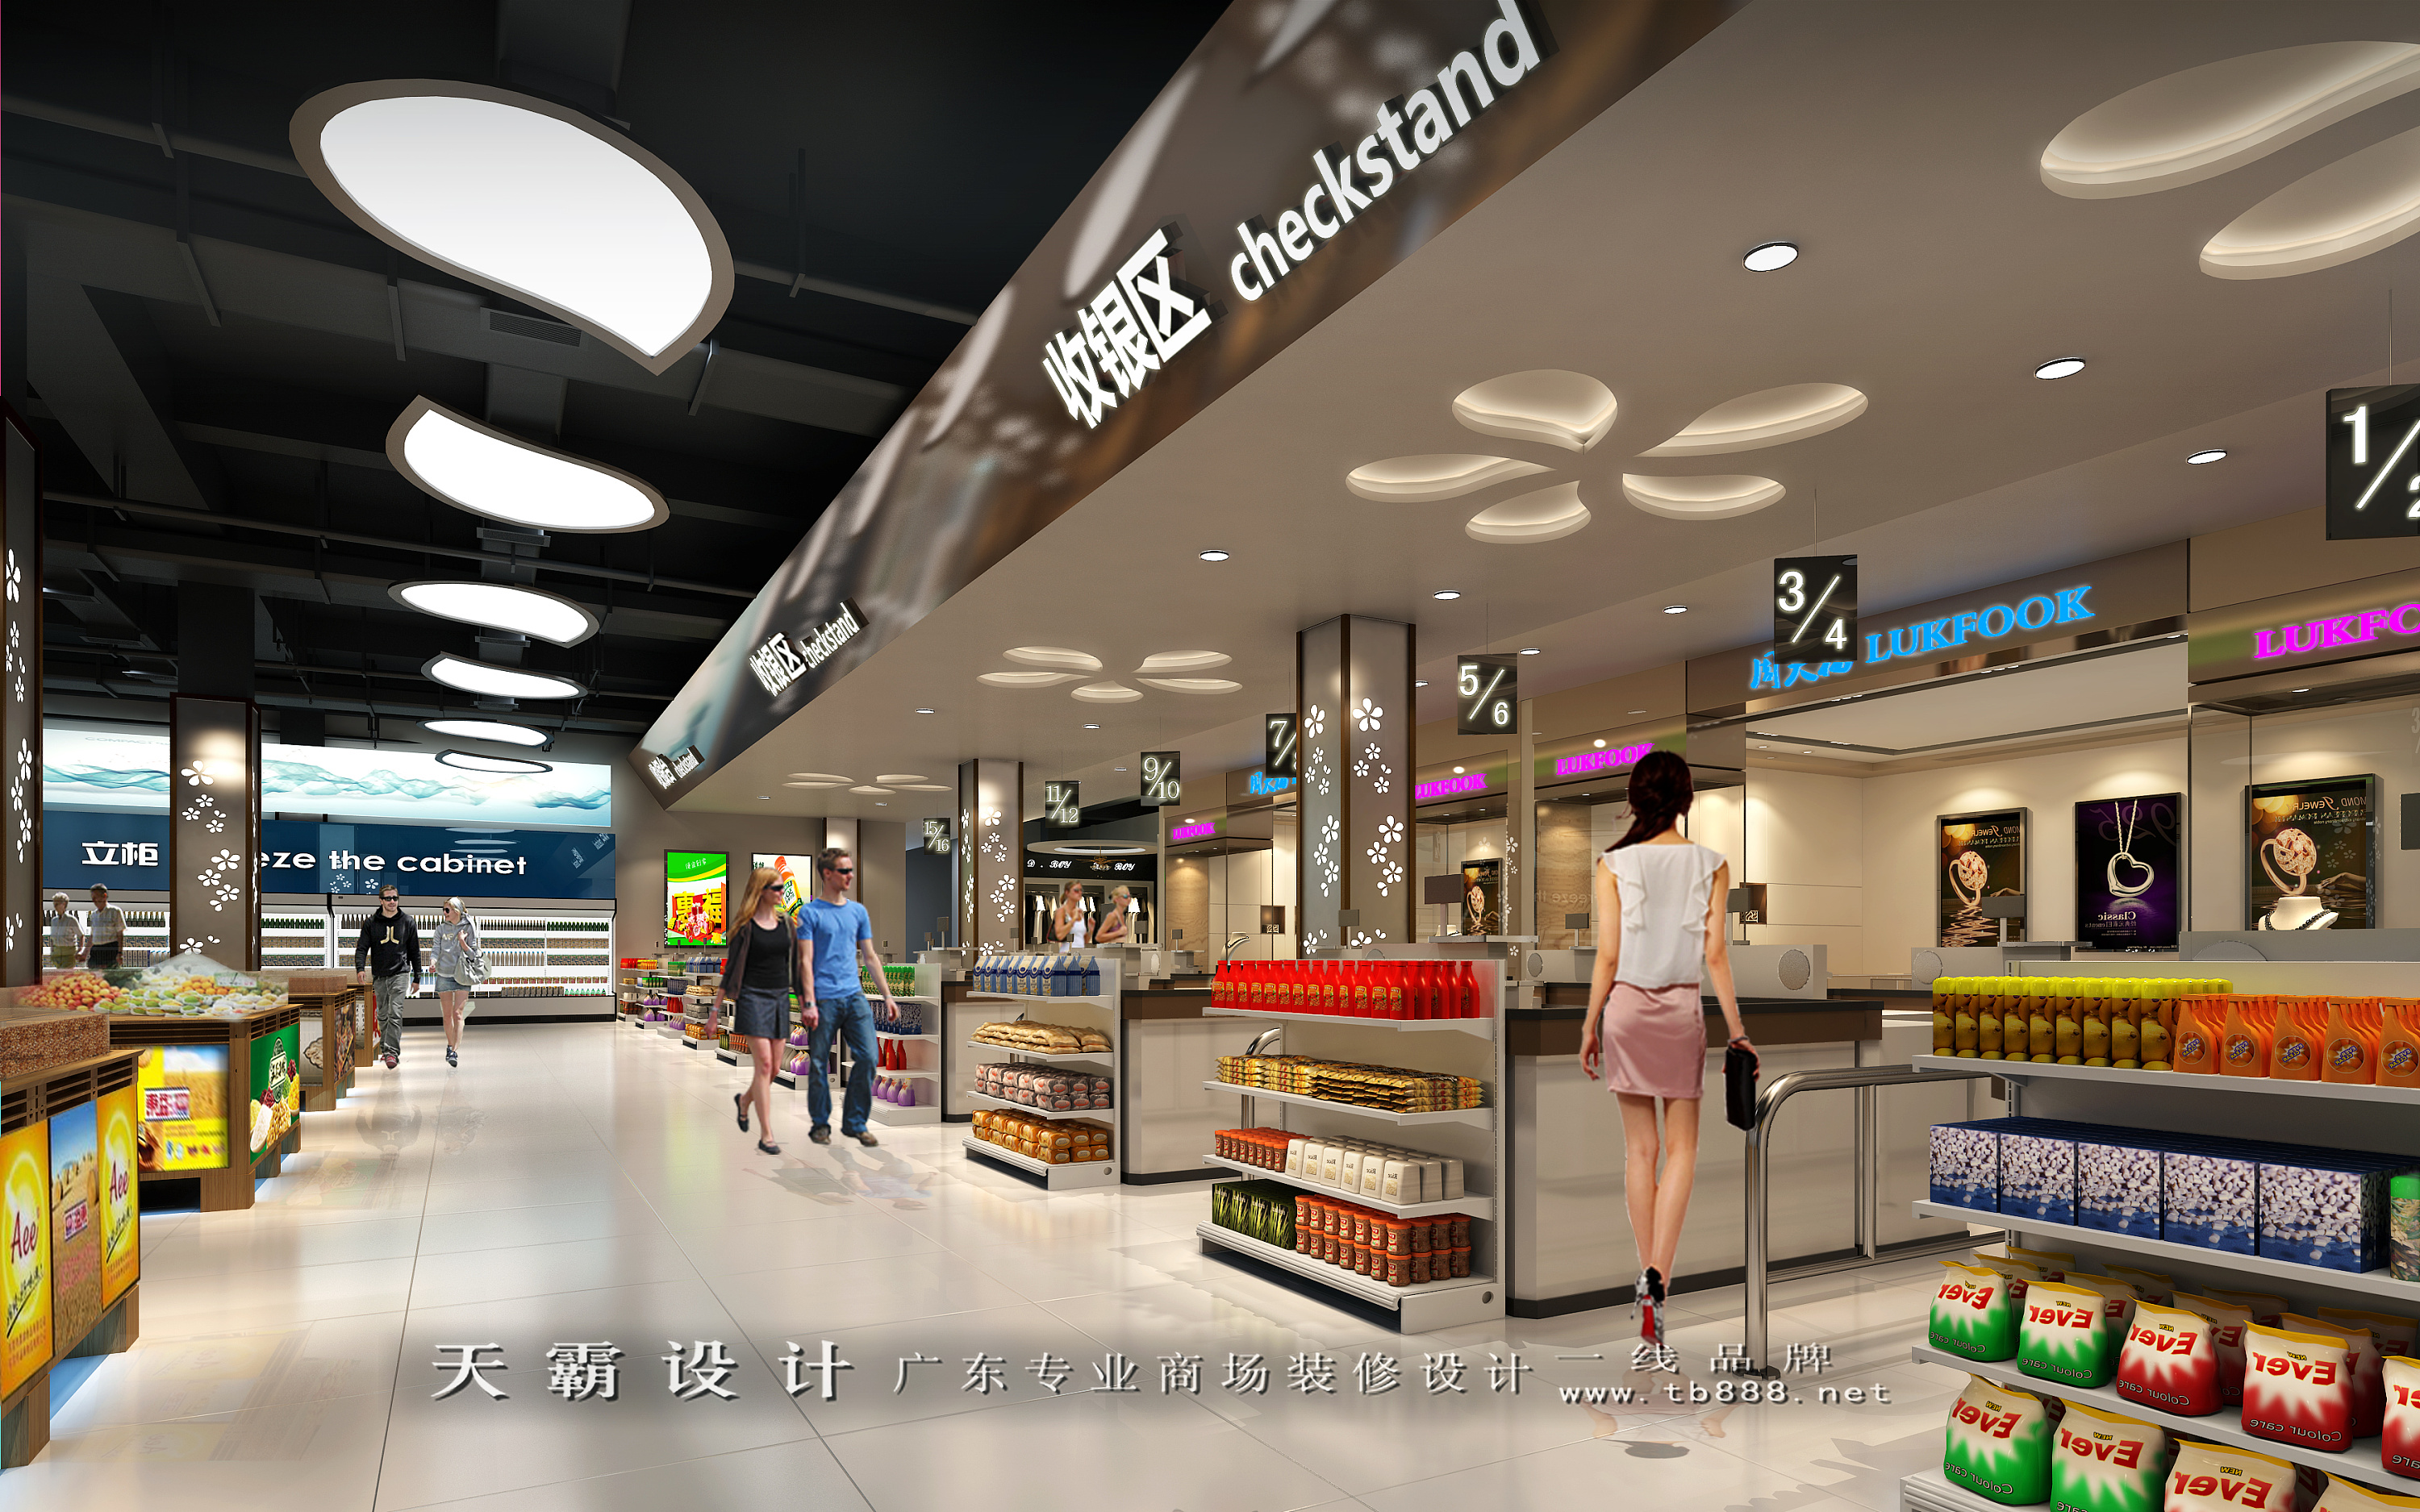 四川成都超市装修设计客户可参考的效果图:大